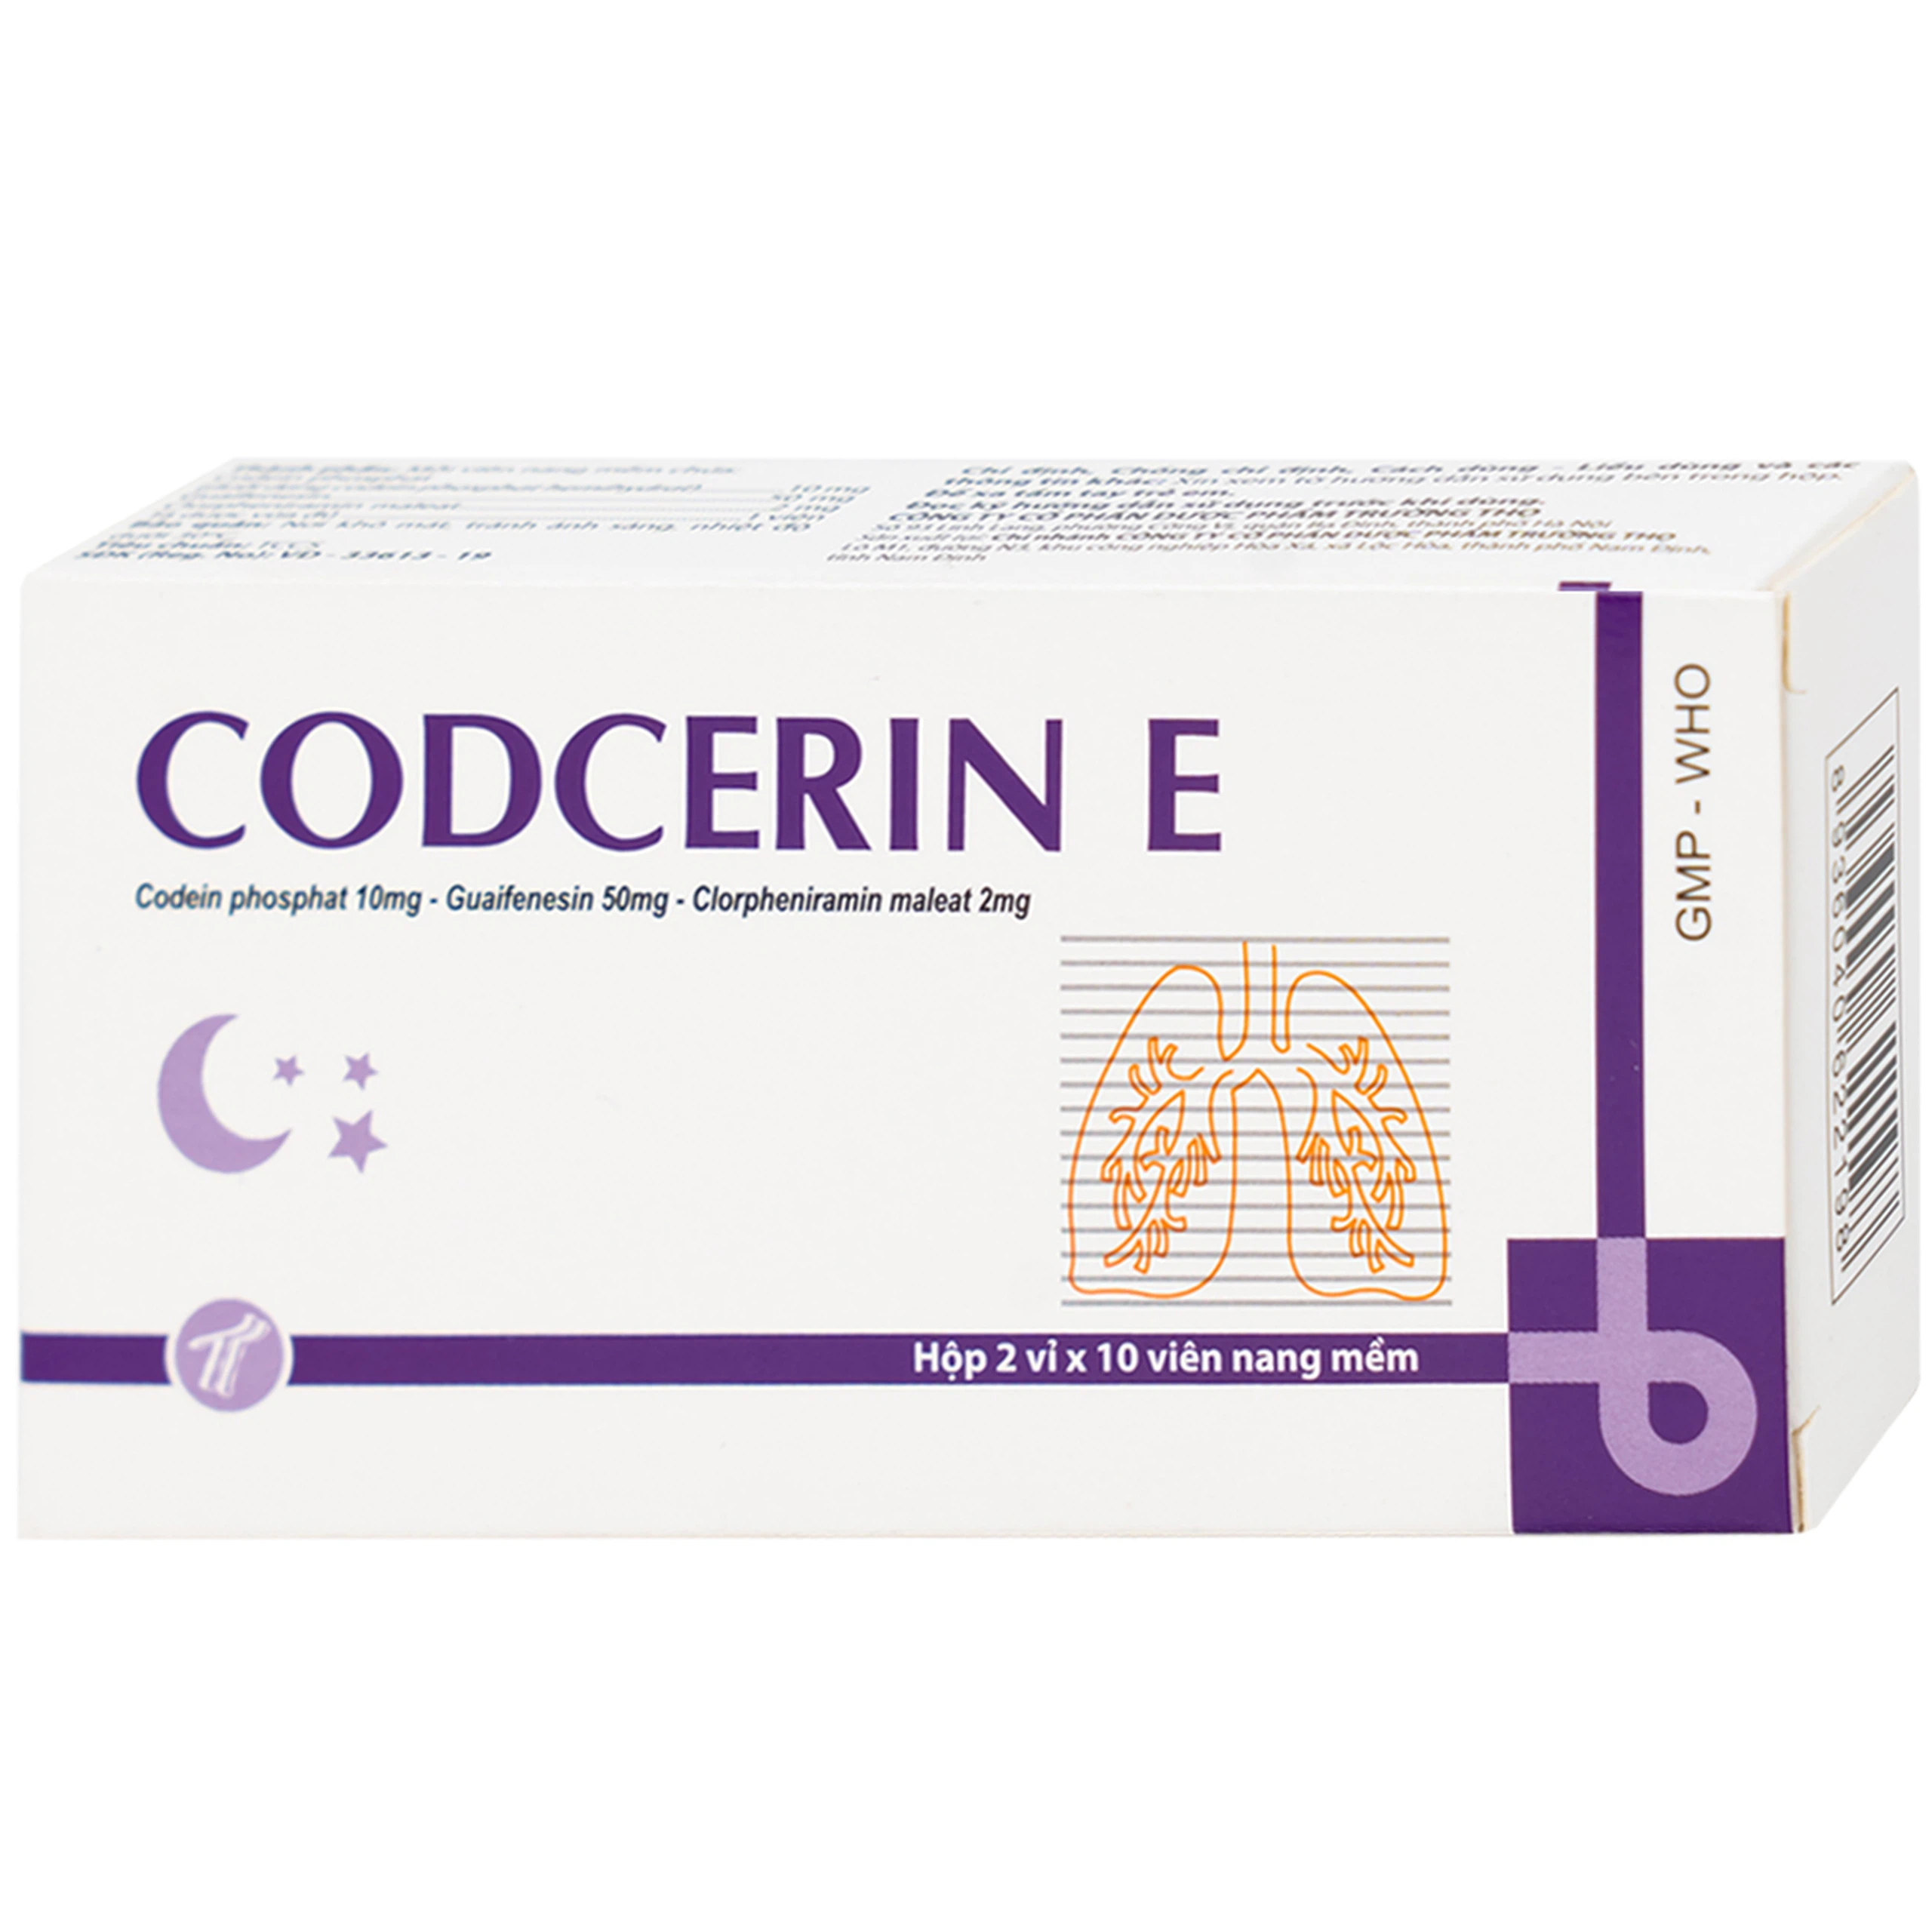 Thuốc Codcerin E Trường Thọ điều trị viêm phế quản, viêm họng, viêm phổi, ho do kích ứng (2 vỉ x 10 viên)